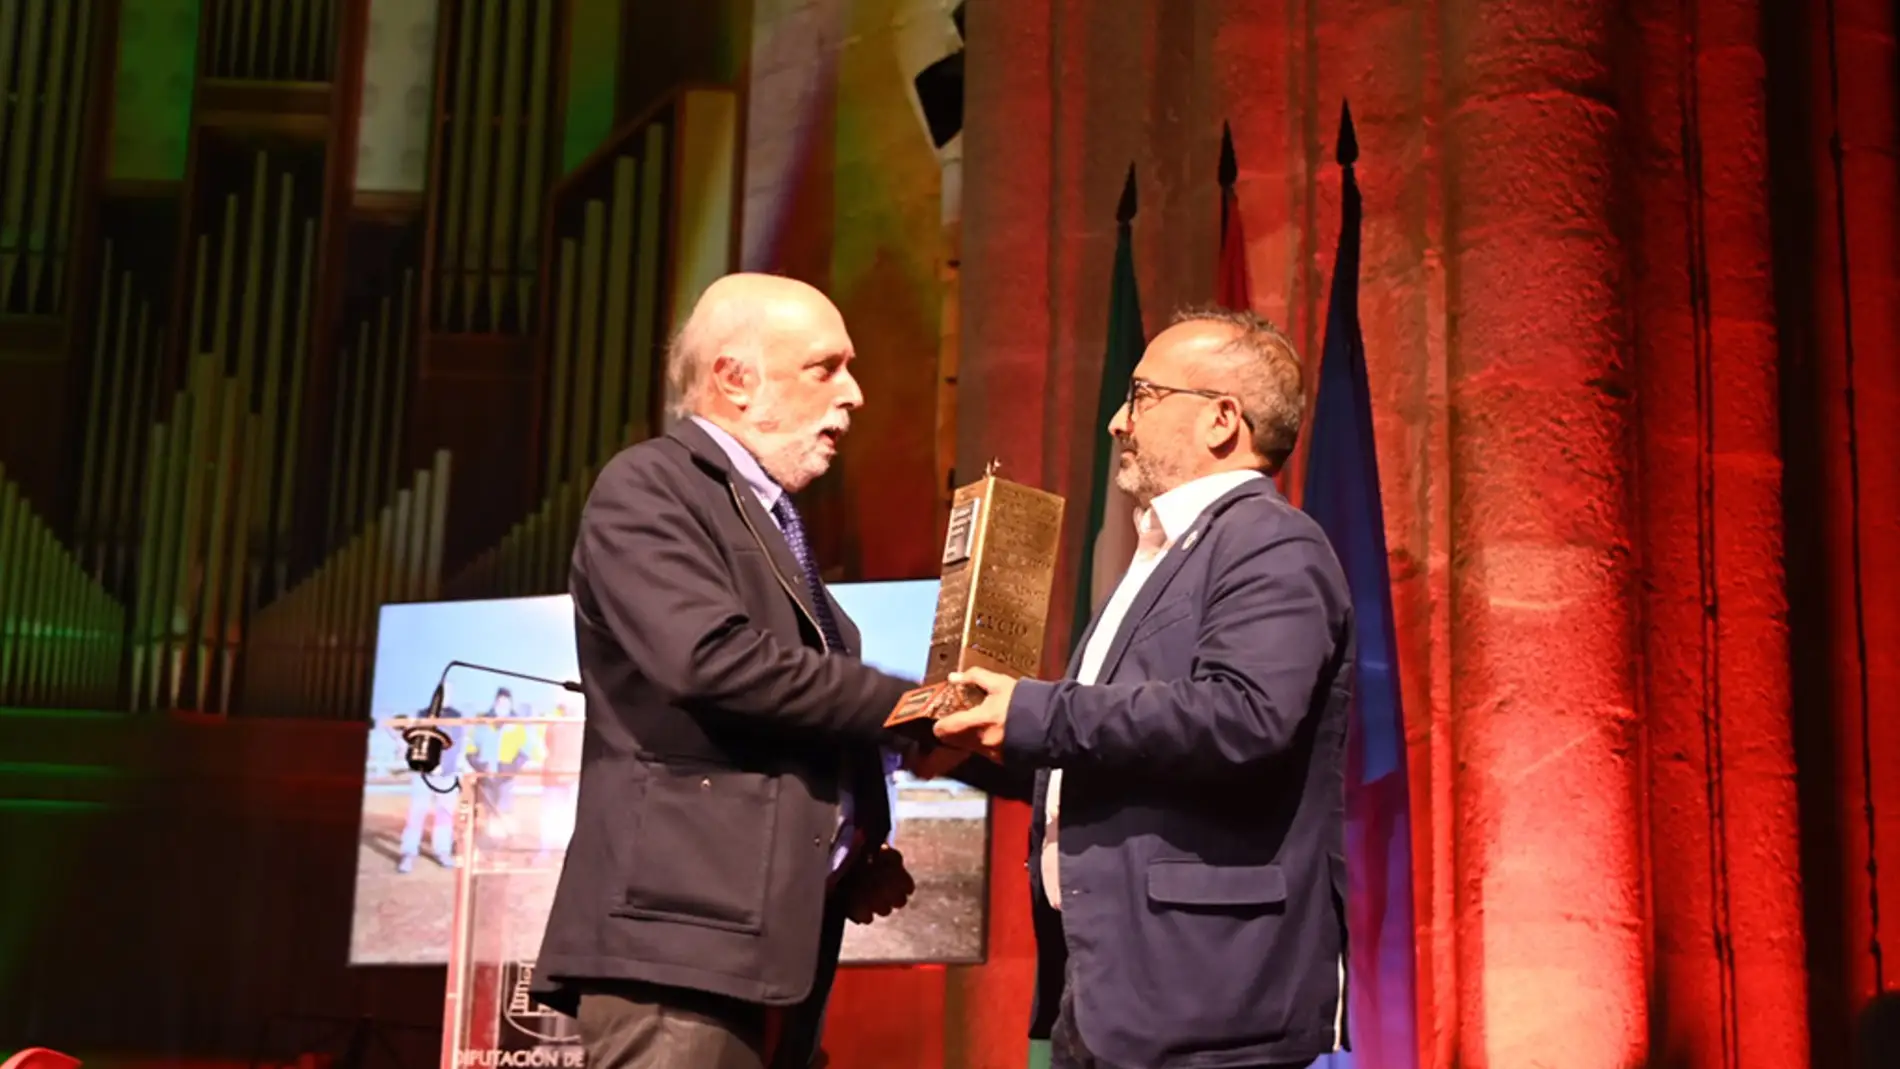 El presidente de la Diputación de Cáceres, Miguel Ángel Morales, entrega el I Premio Conchita Viera al antropólogo Francisco Echevarría